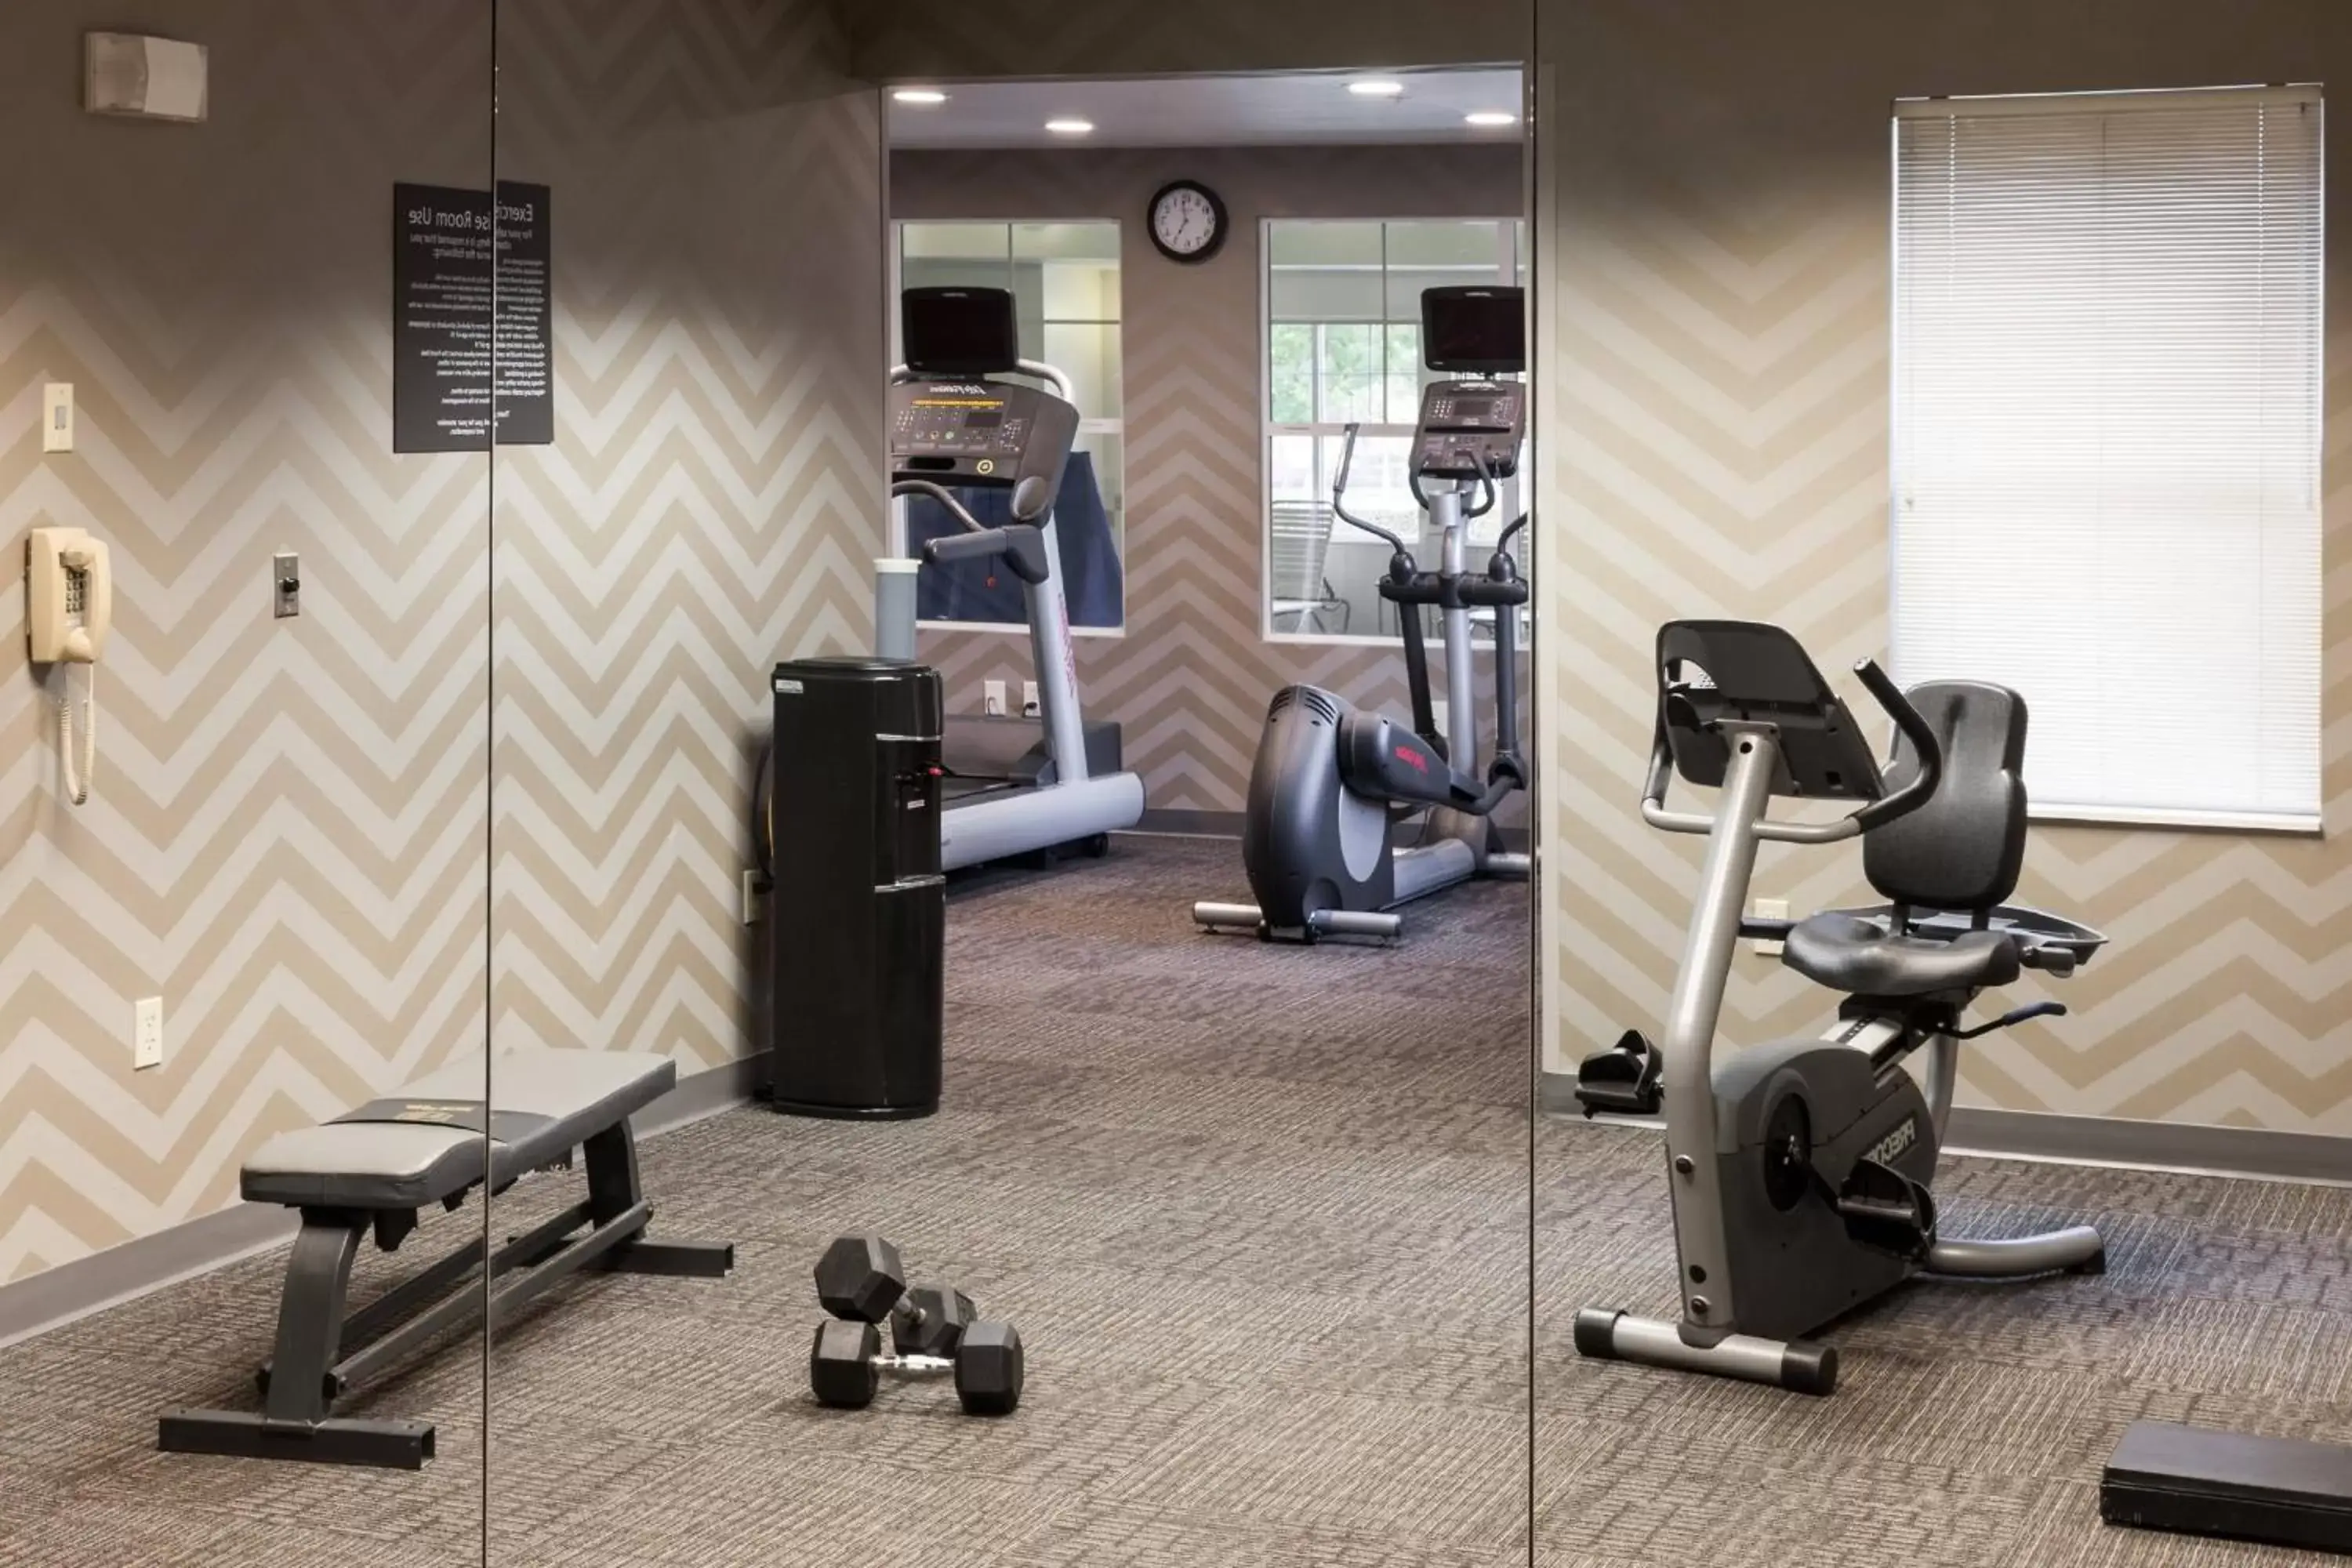 Fitness centre/facilities, Fitness Center/Facilities in Residence Inn by Marriott San Bernardino